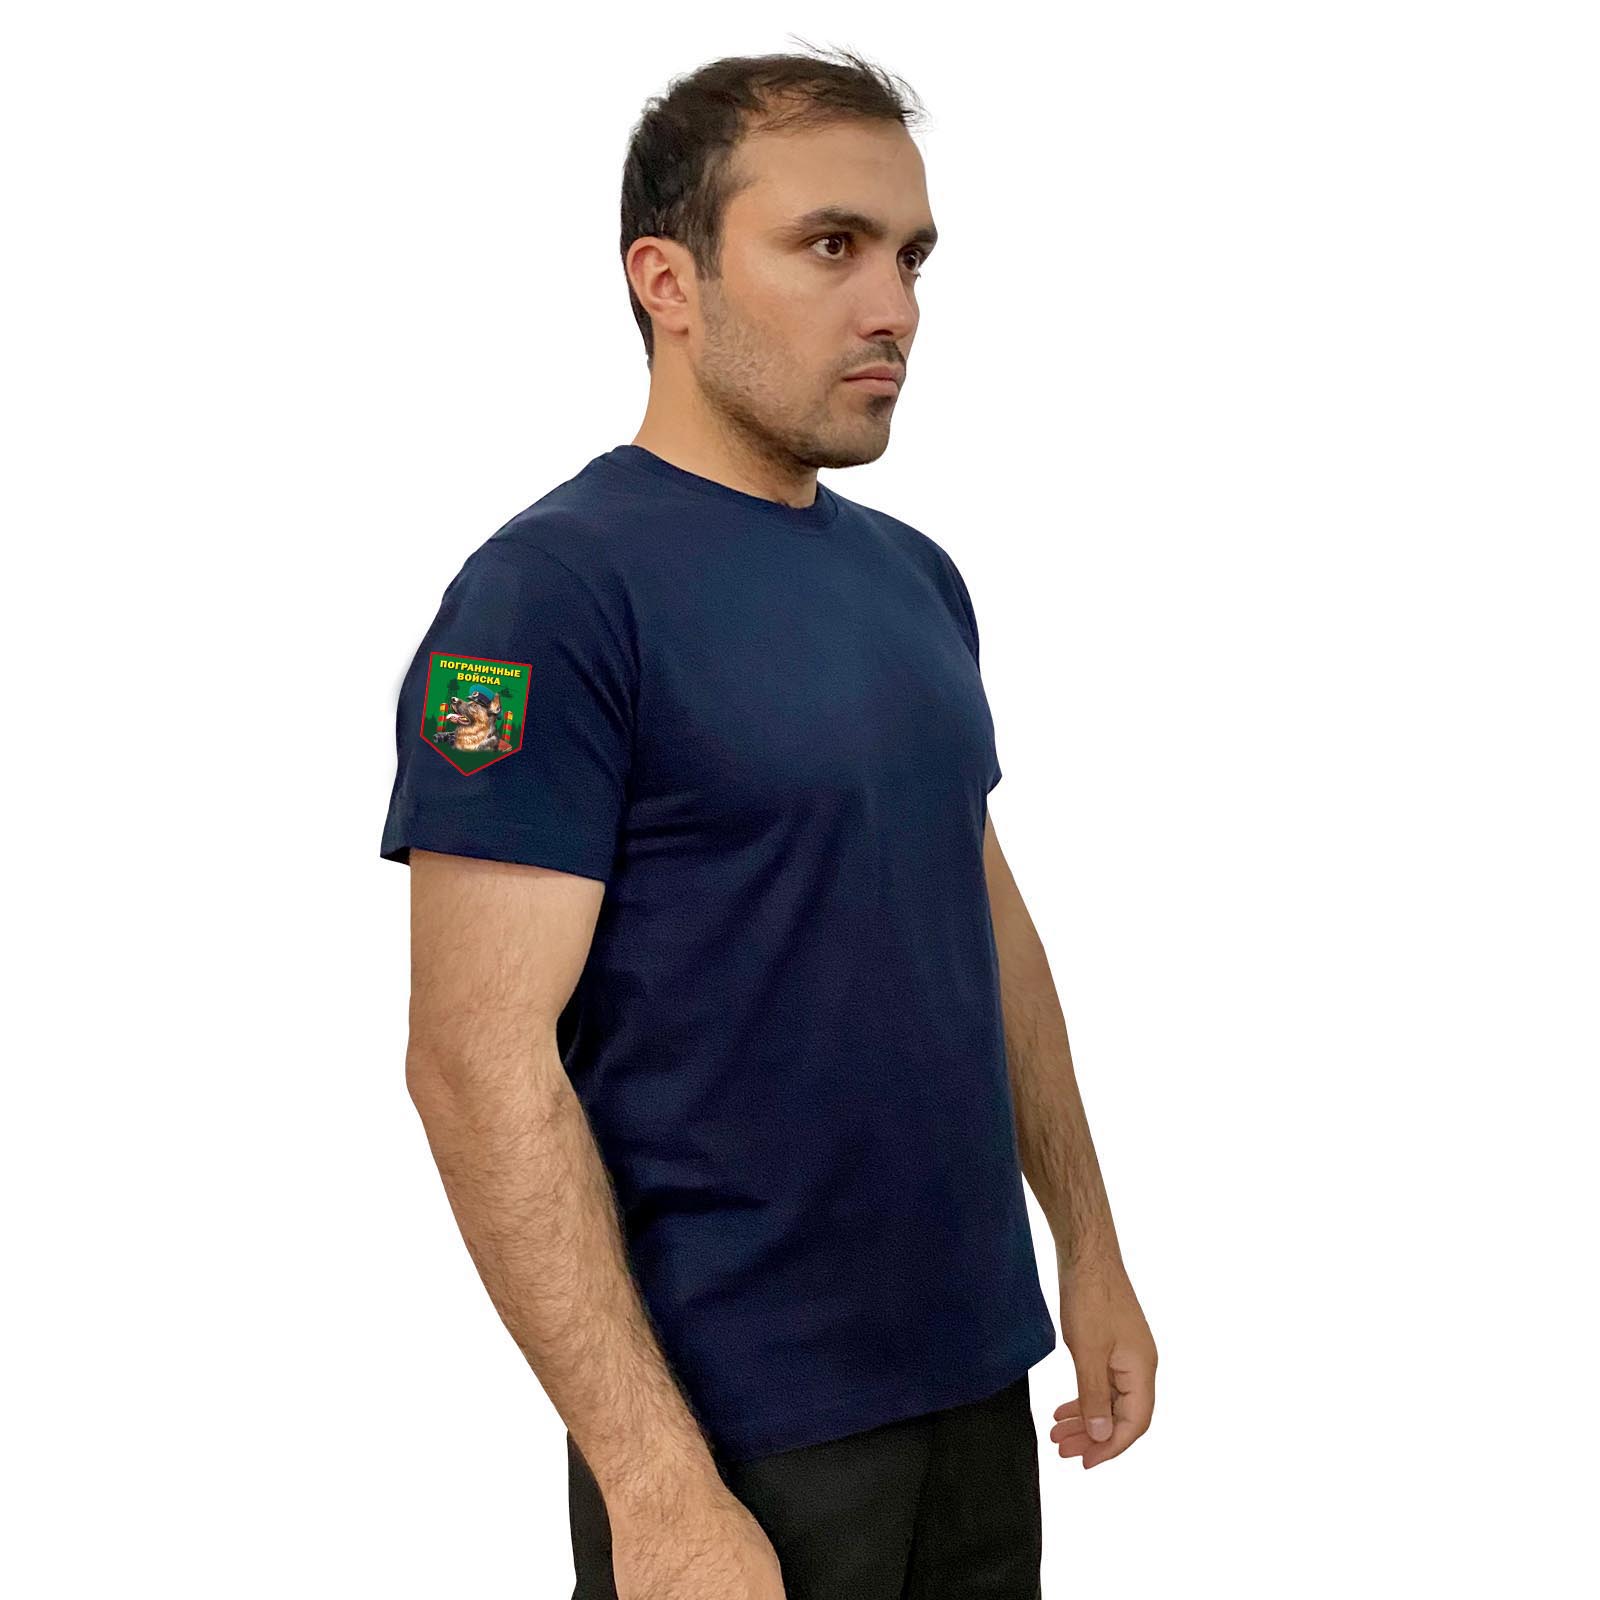 Тёмно-синяя футболка с термотрансфером "Пограничные войска" на рукаве